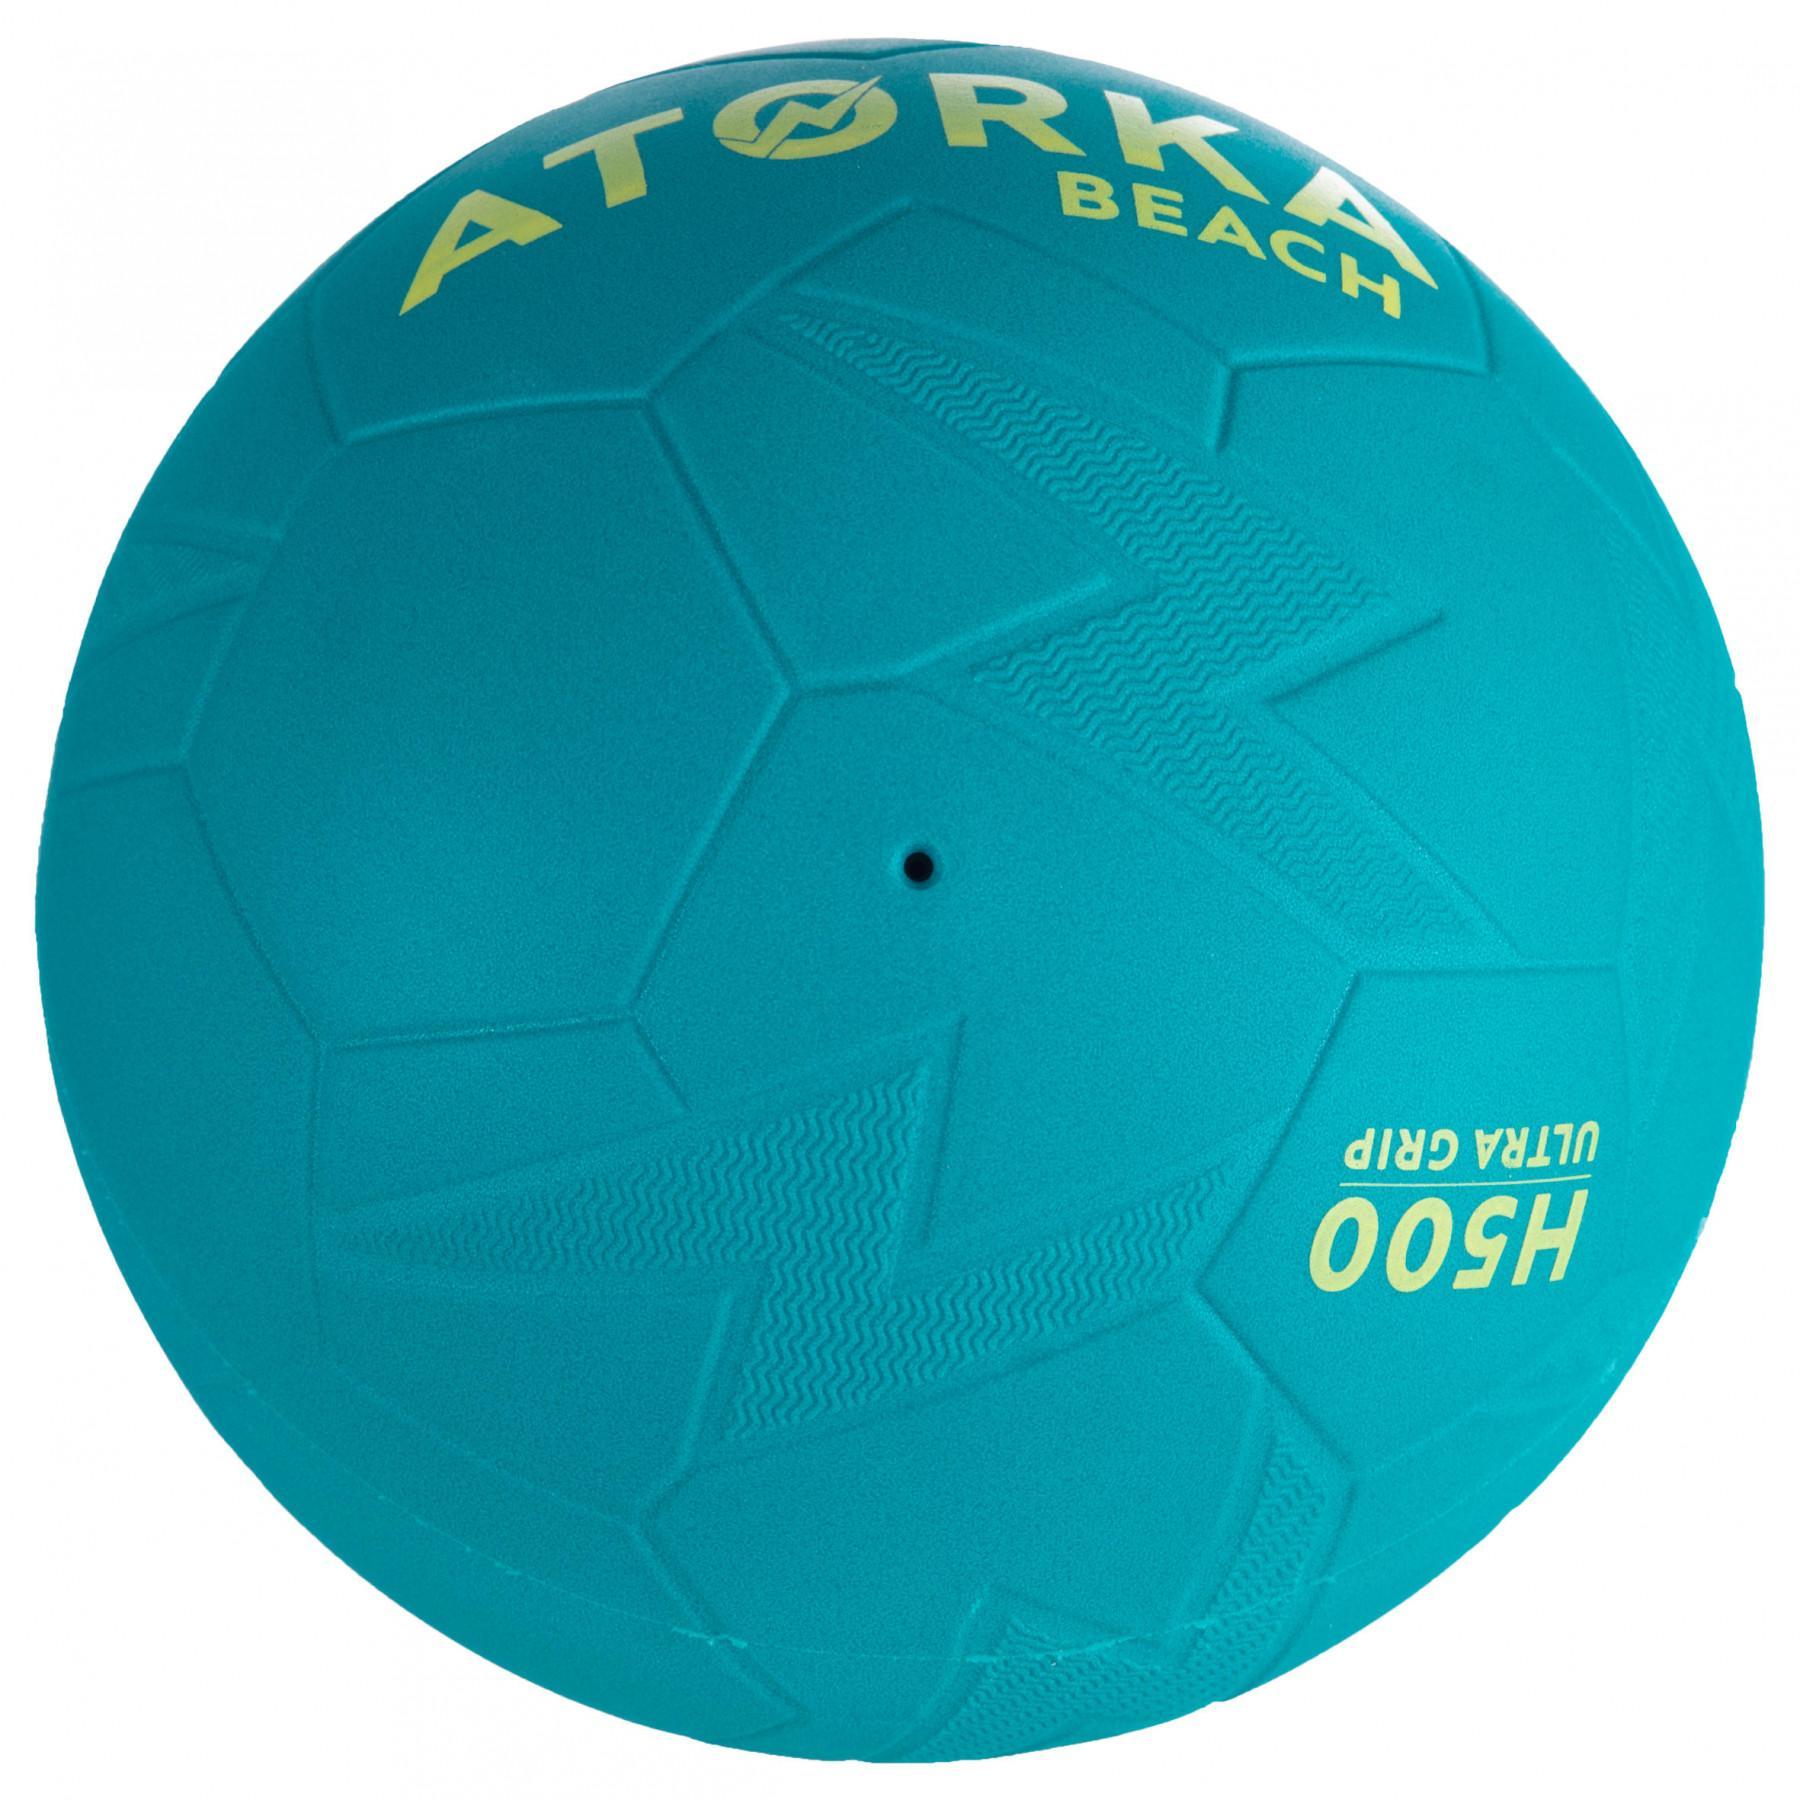 Plażowa piłka ręczna Atorka HB500B - Taille 3